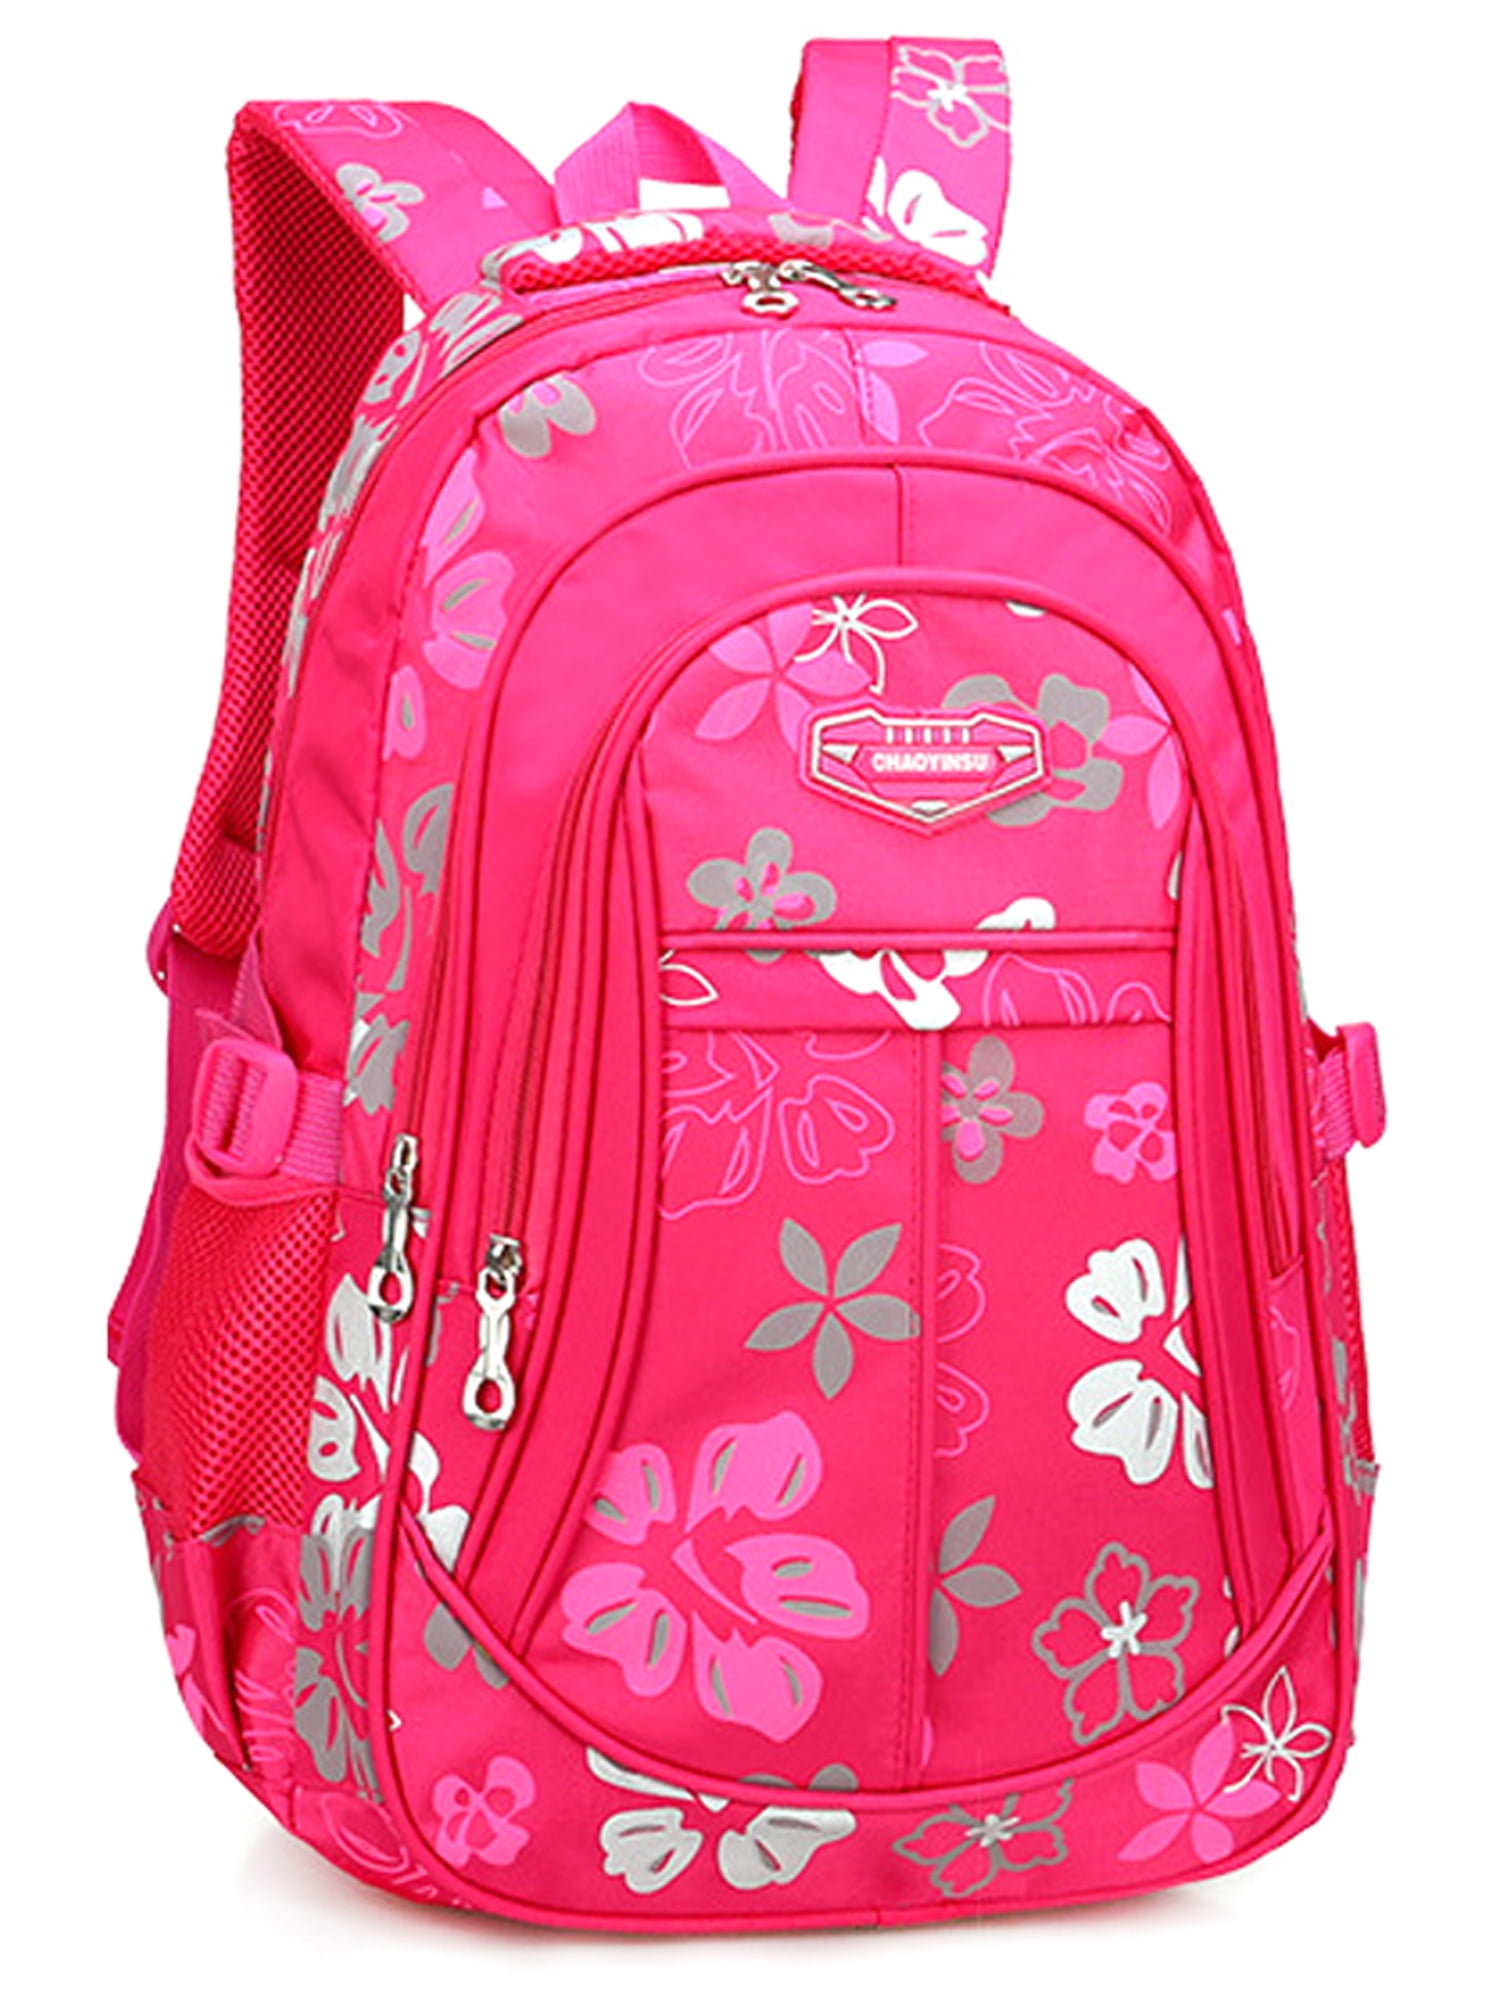 WODLLCAS - Girls Kids Backpack Rucksack Children Nylon Reduce Burden